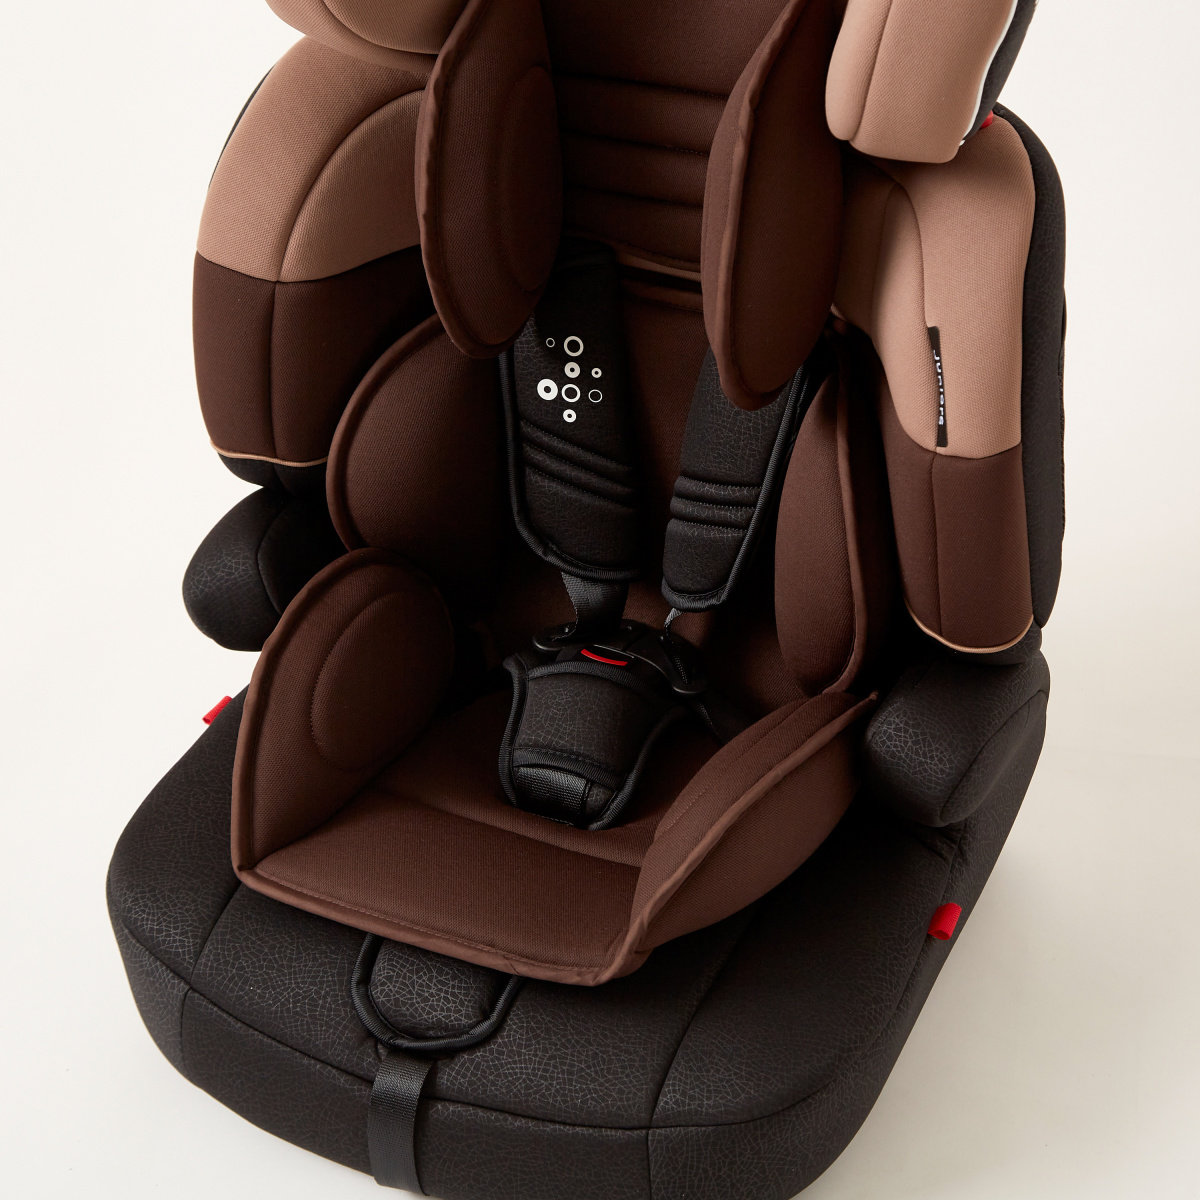 مقعد سيارة للأطفال الأكبر سنًا دومينجو - بني